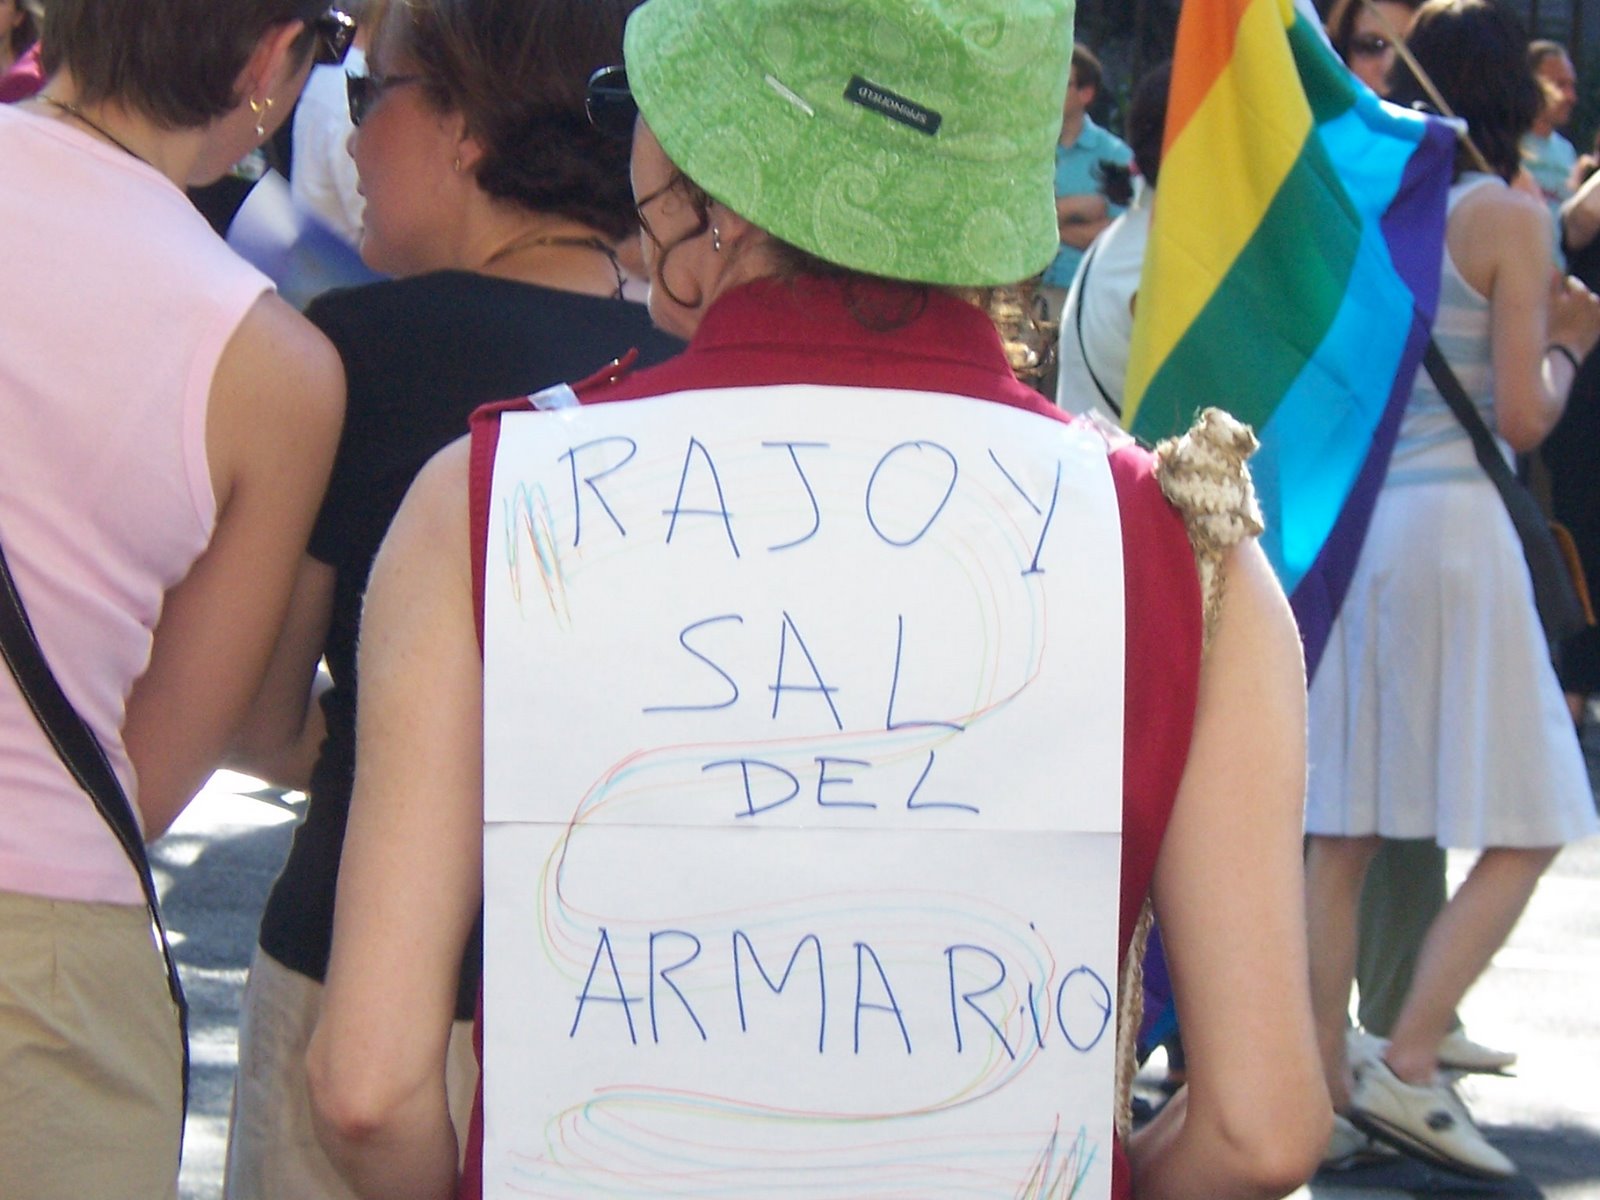 [Rajoy+sal+del+armario.jpg]